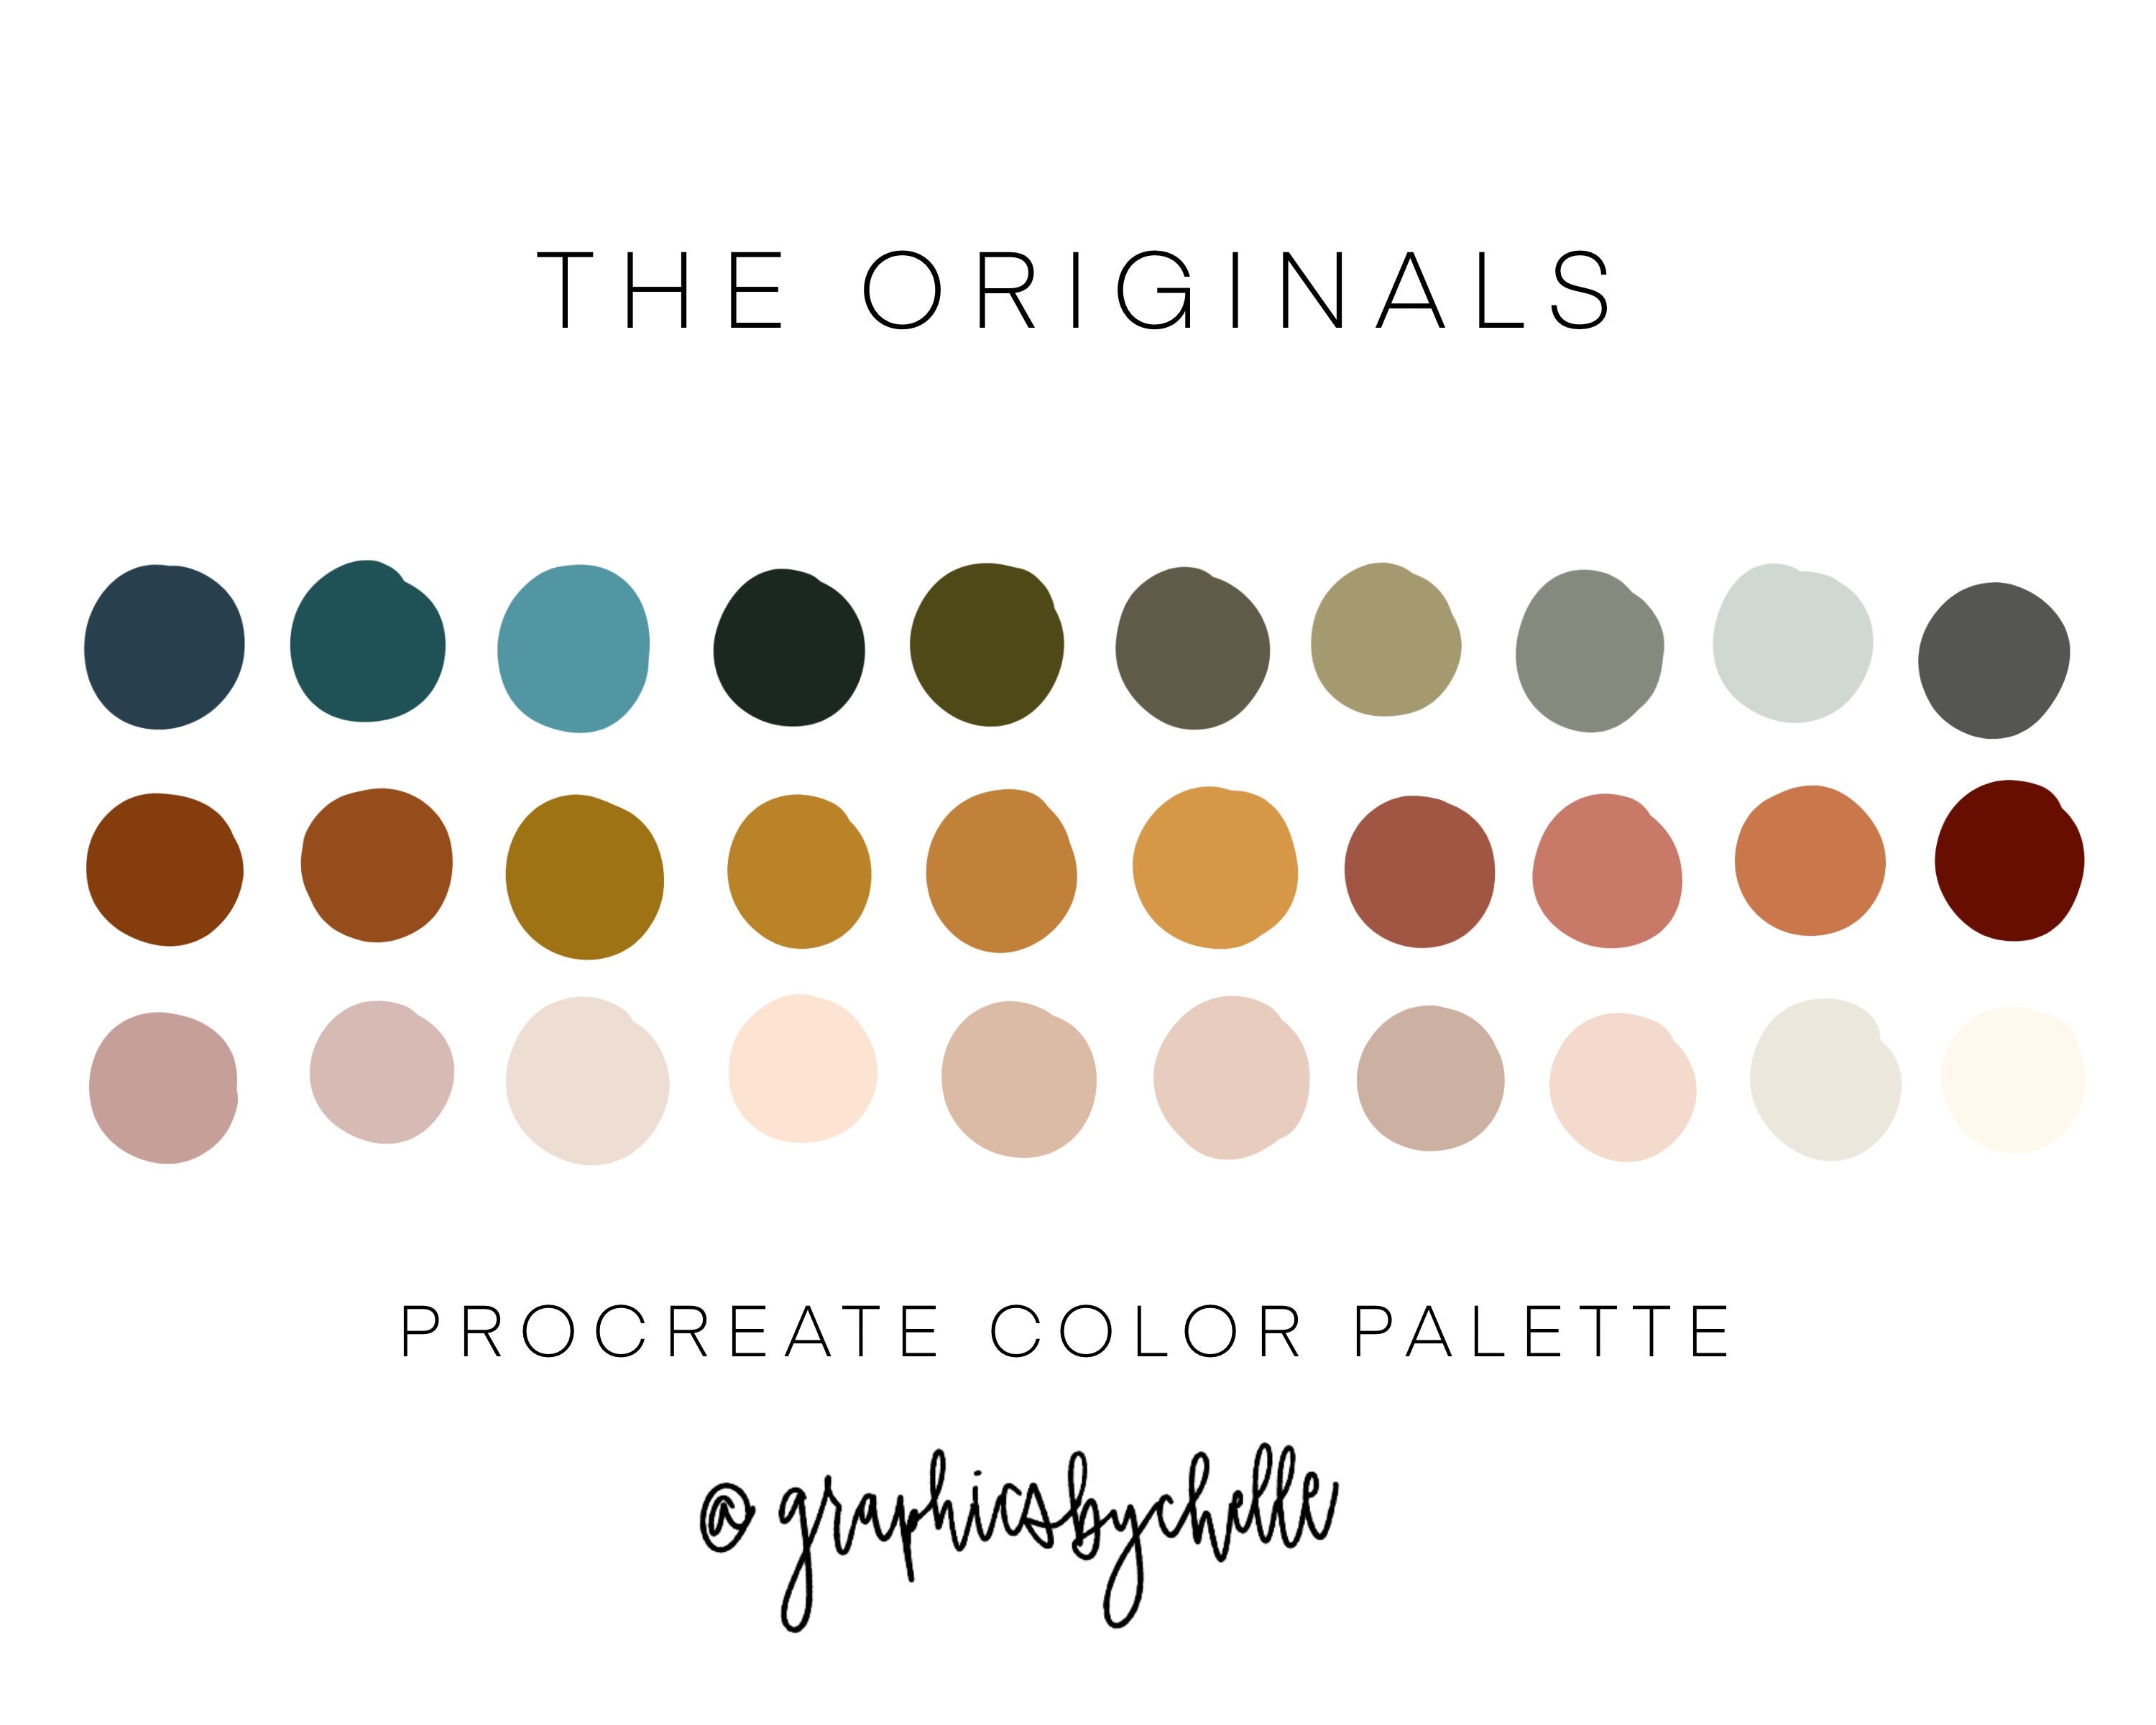 THE ORIGINALS color palette / procreate / swatches / color palette / iPad /  iPad Pro